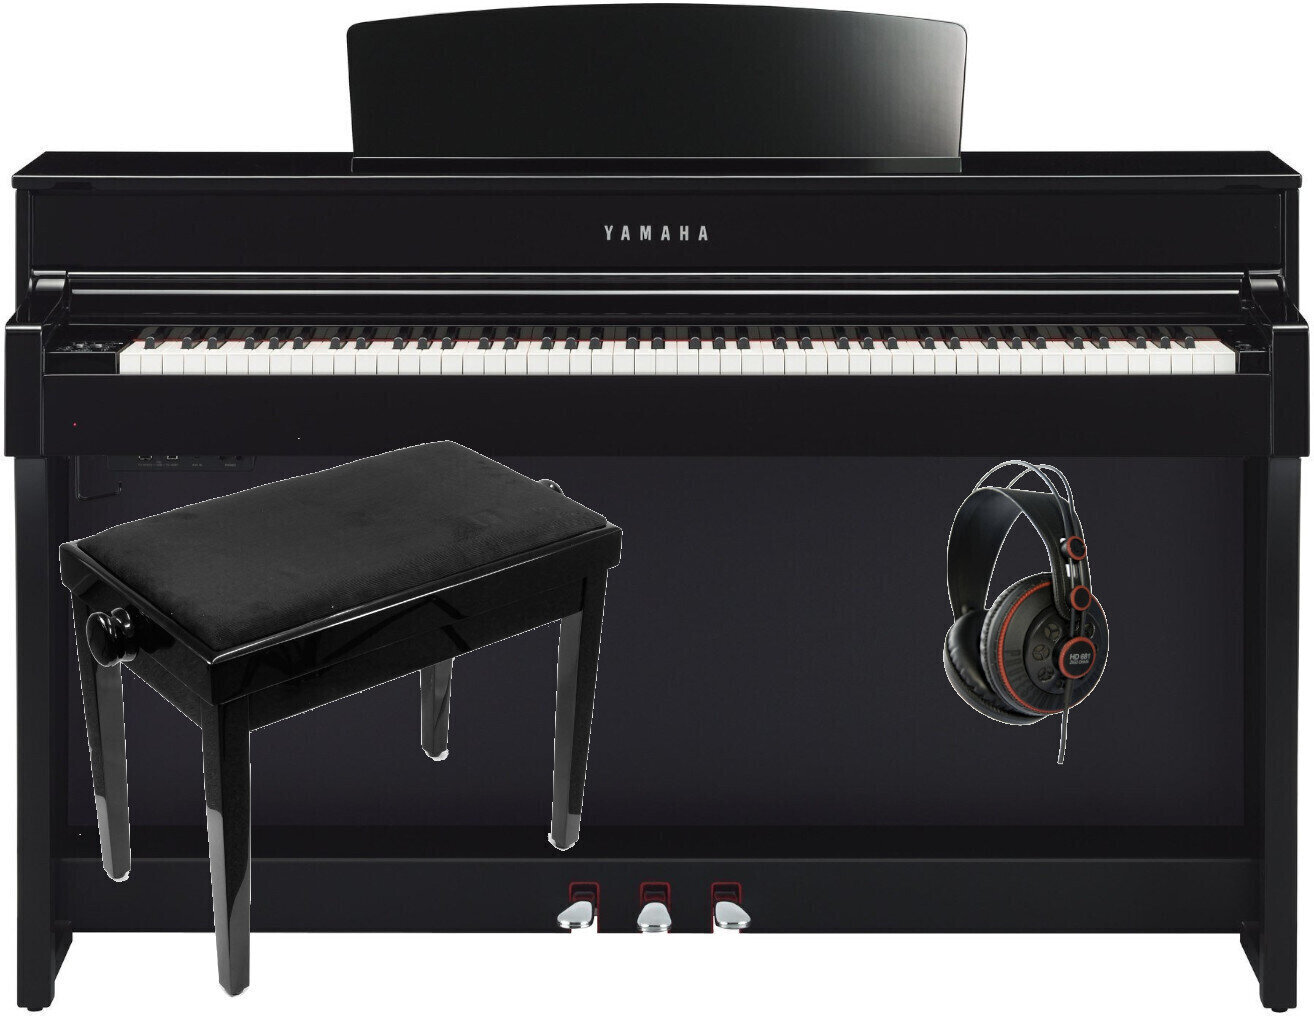 Ψηφιακό Πιάνο Yamaha CLP-645 PE Set Polished Ebony Ψηφιακό Πιάνο